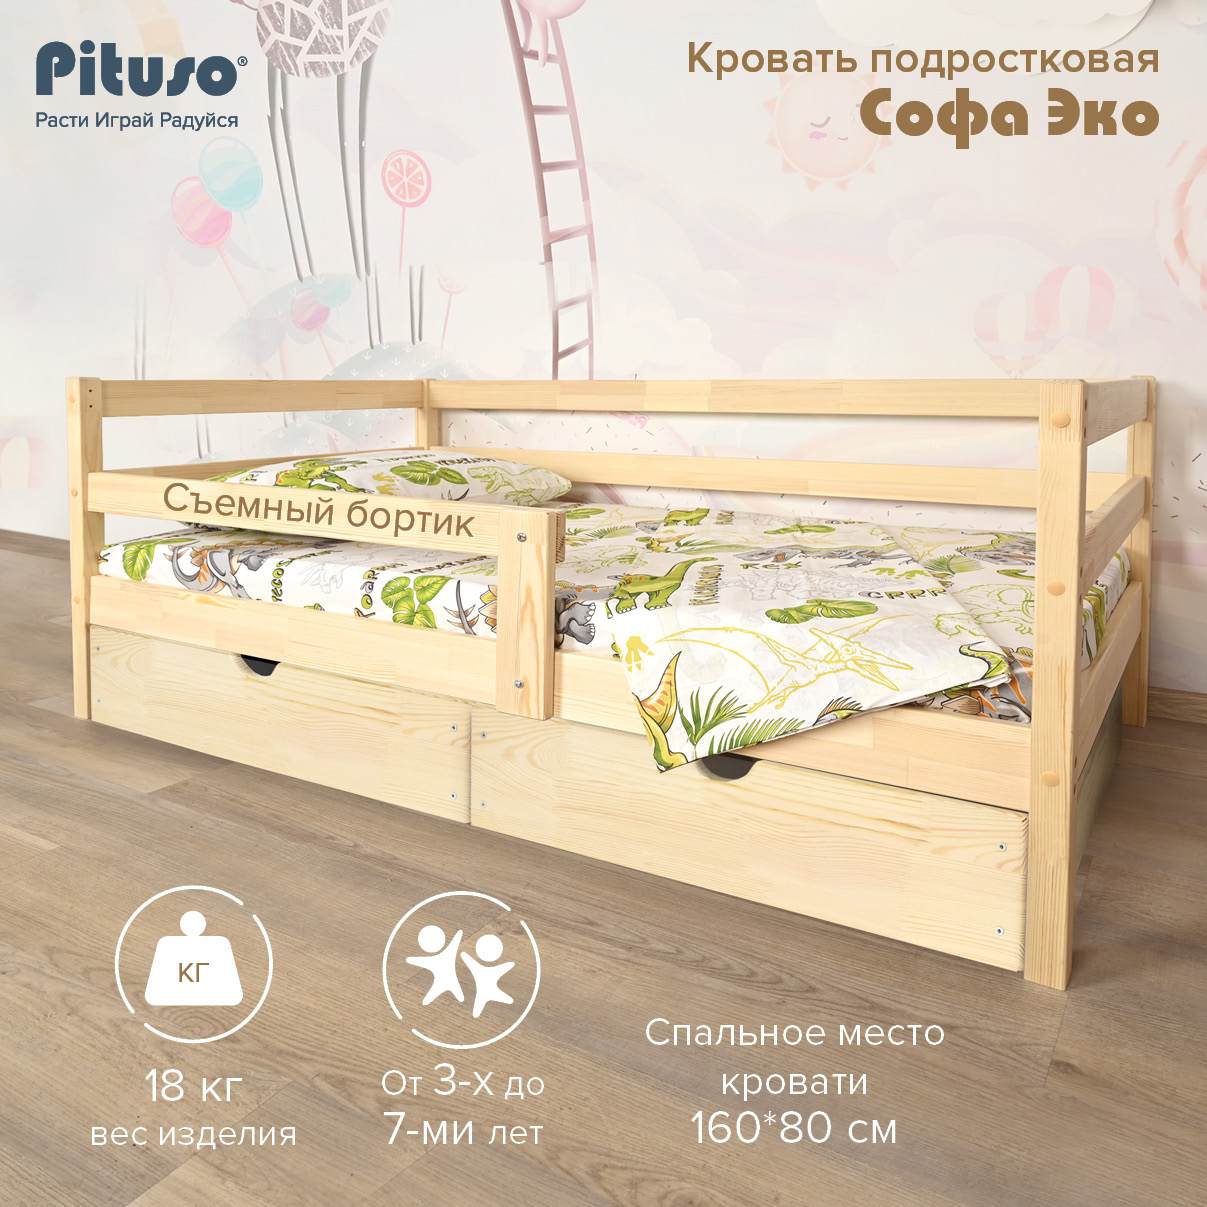 Кровать Подростковая Pituso Софа Эко Натуральный подростковая кровать pituso amada 160х80 см